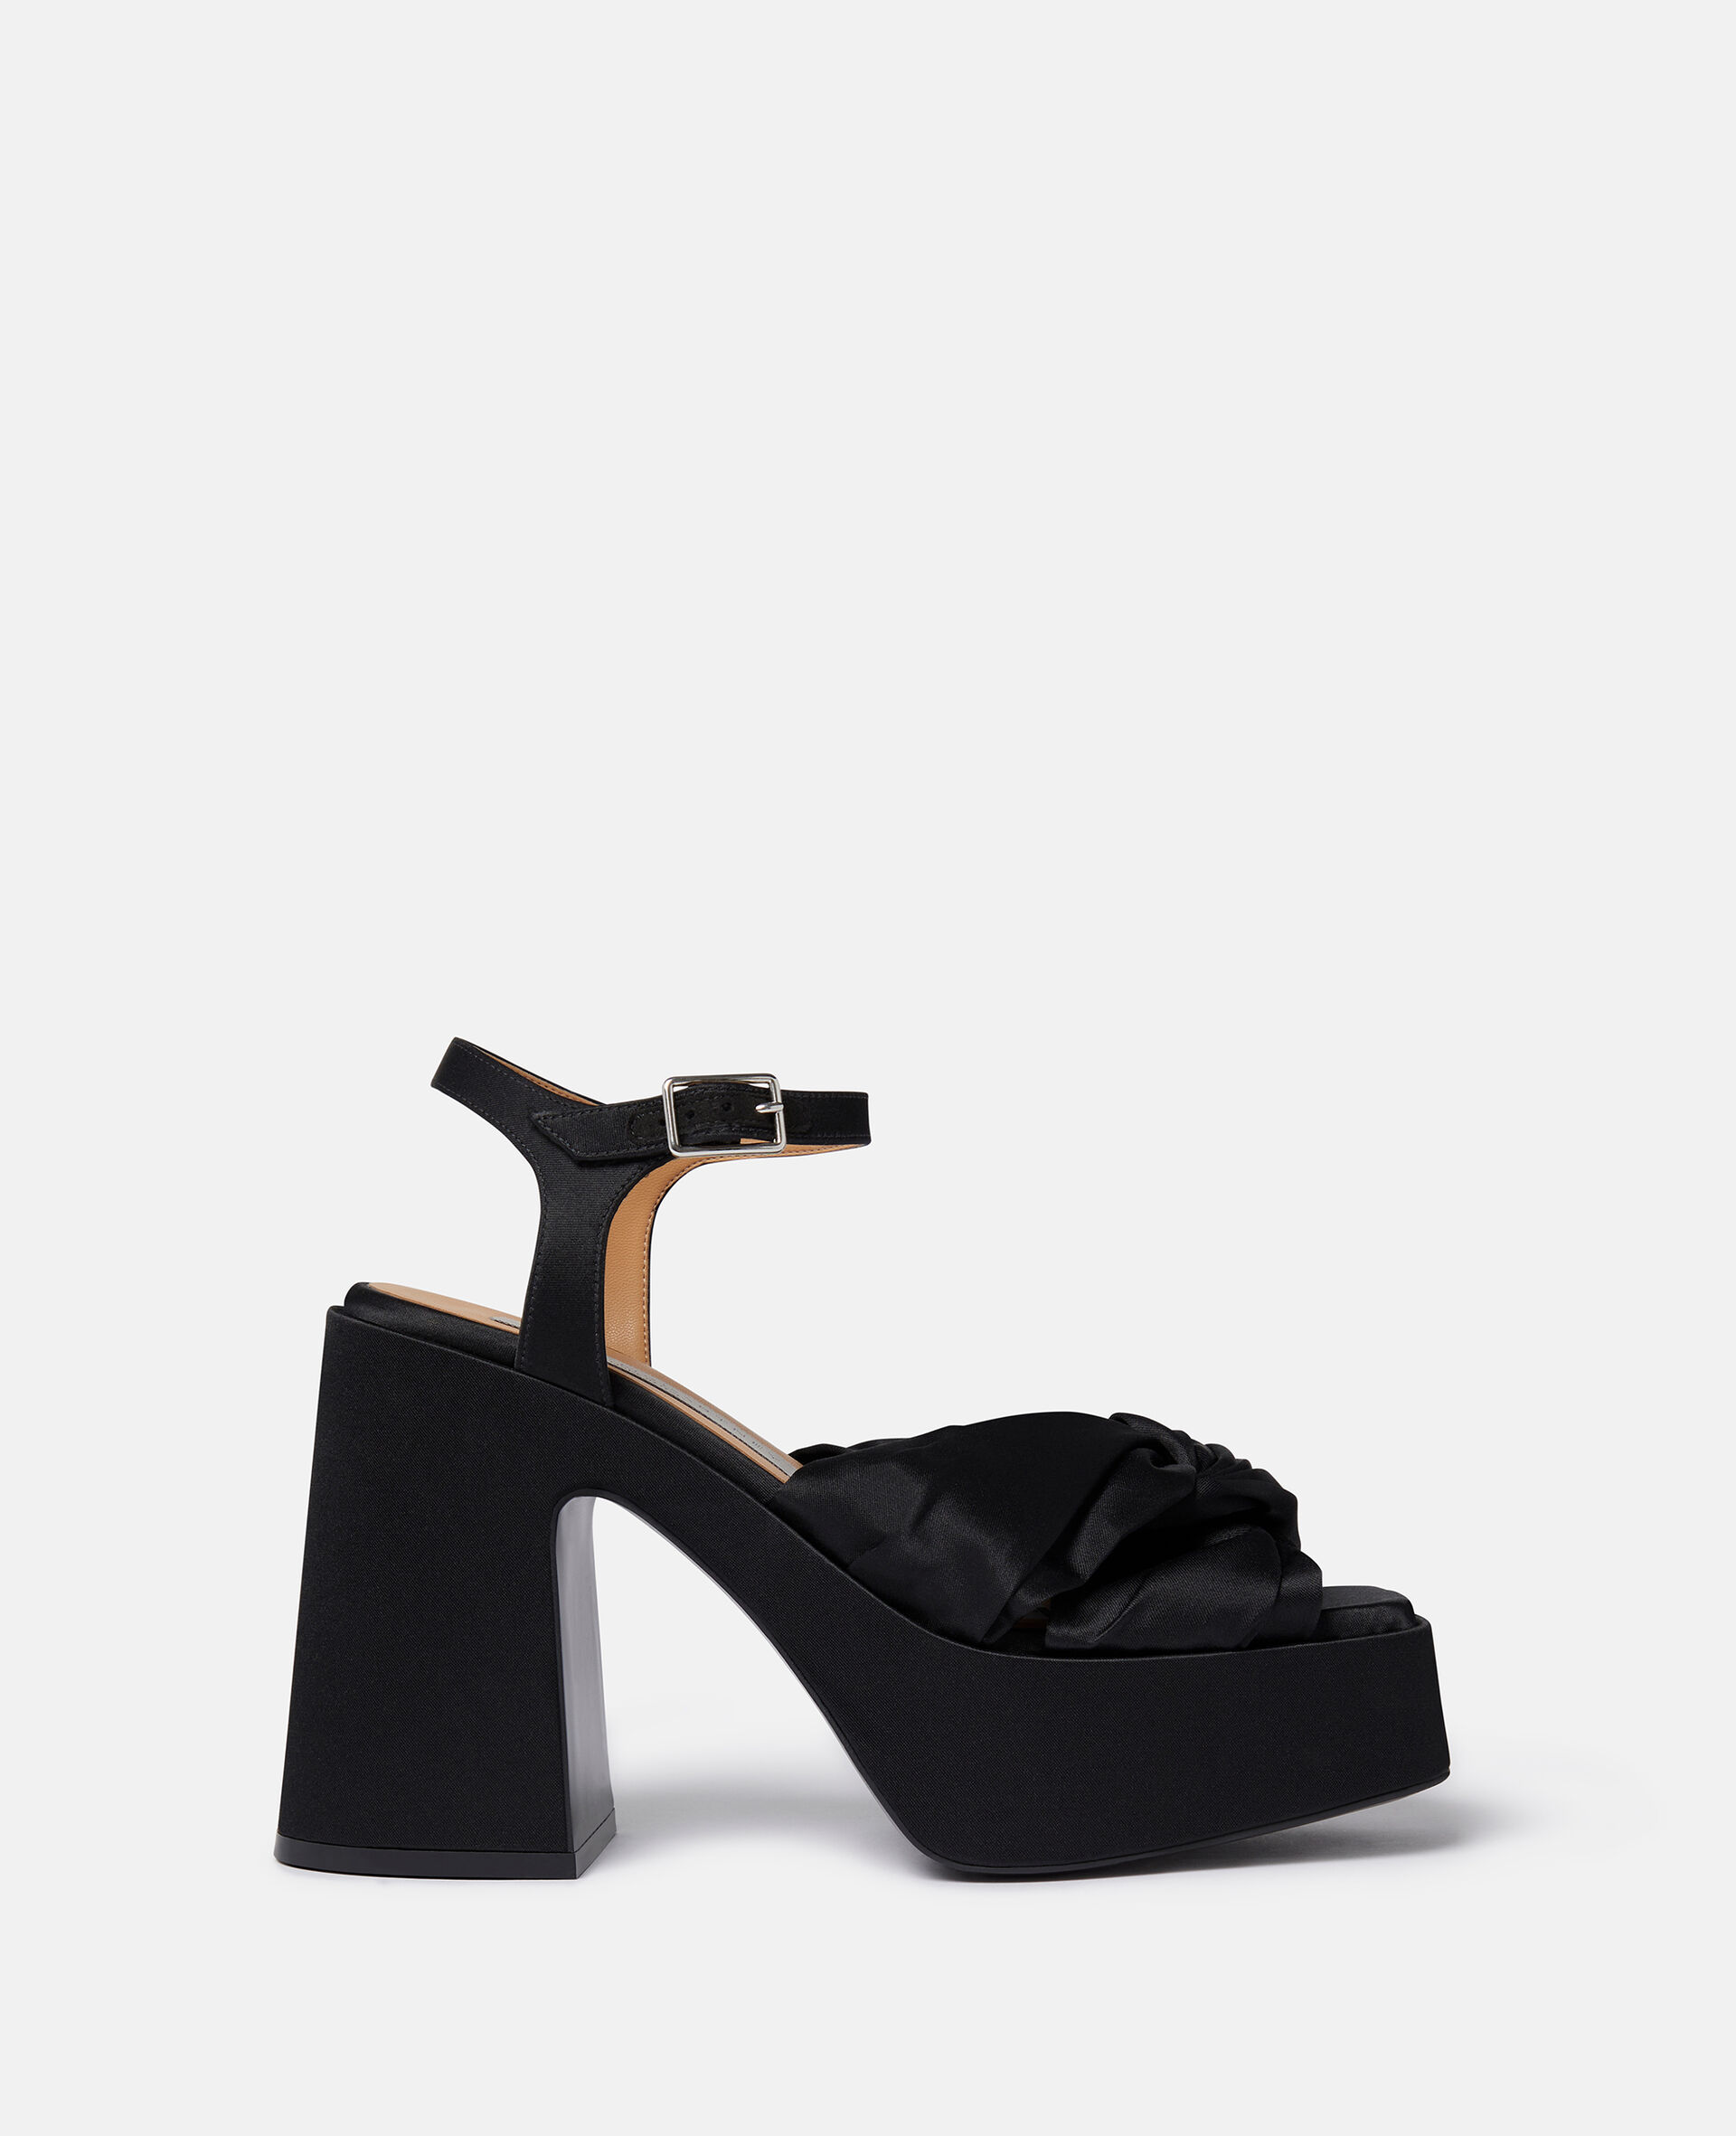 Skyla Buckle Platform Sandals-Black-large image number 0